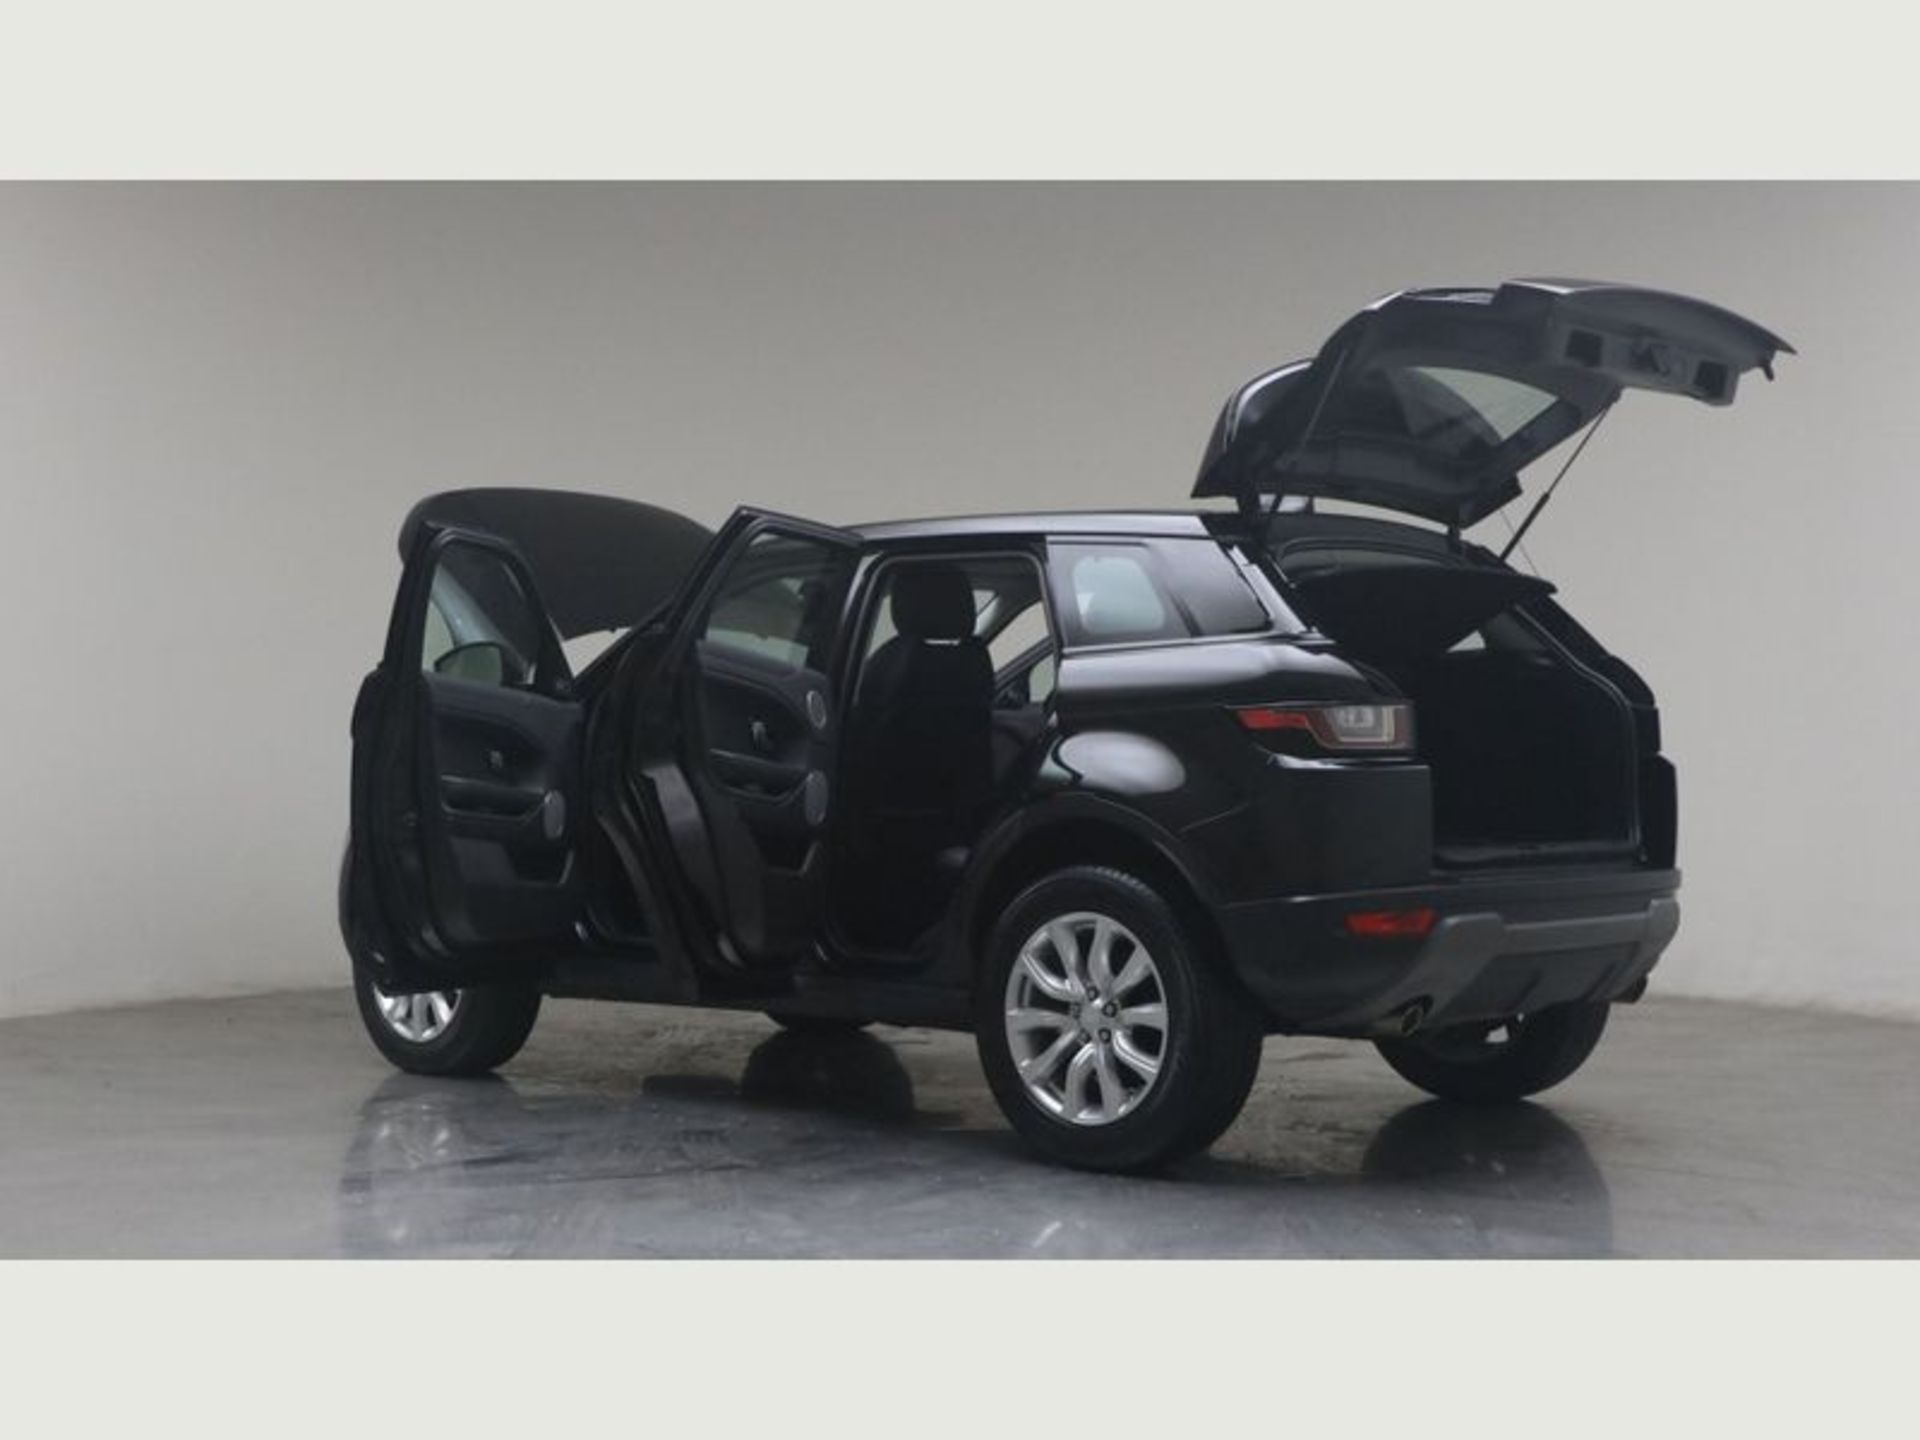 (Reserve Met) Range Rover Evoque 2.0 ED4 SE Tech - 2018 Model - FLRSH - Parking Sensors - 65k only!! - Image 5 of 14